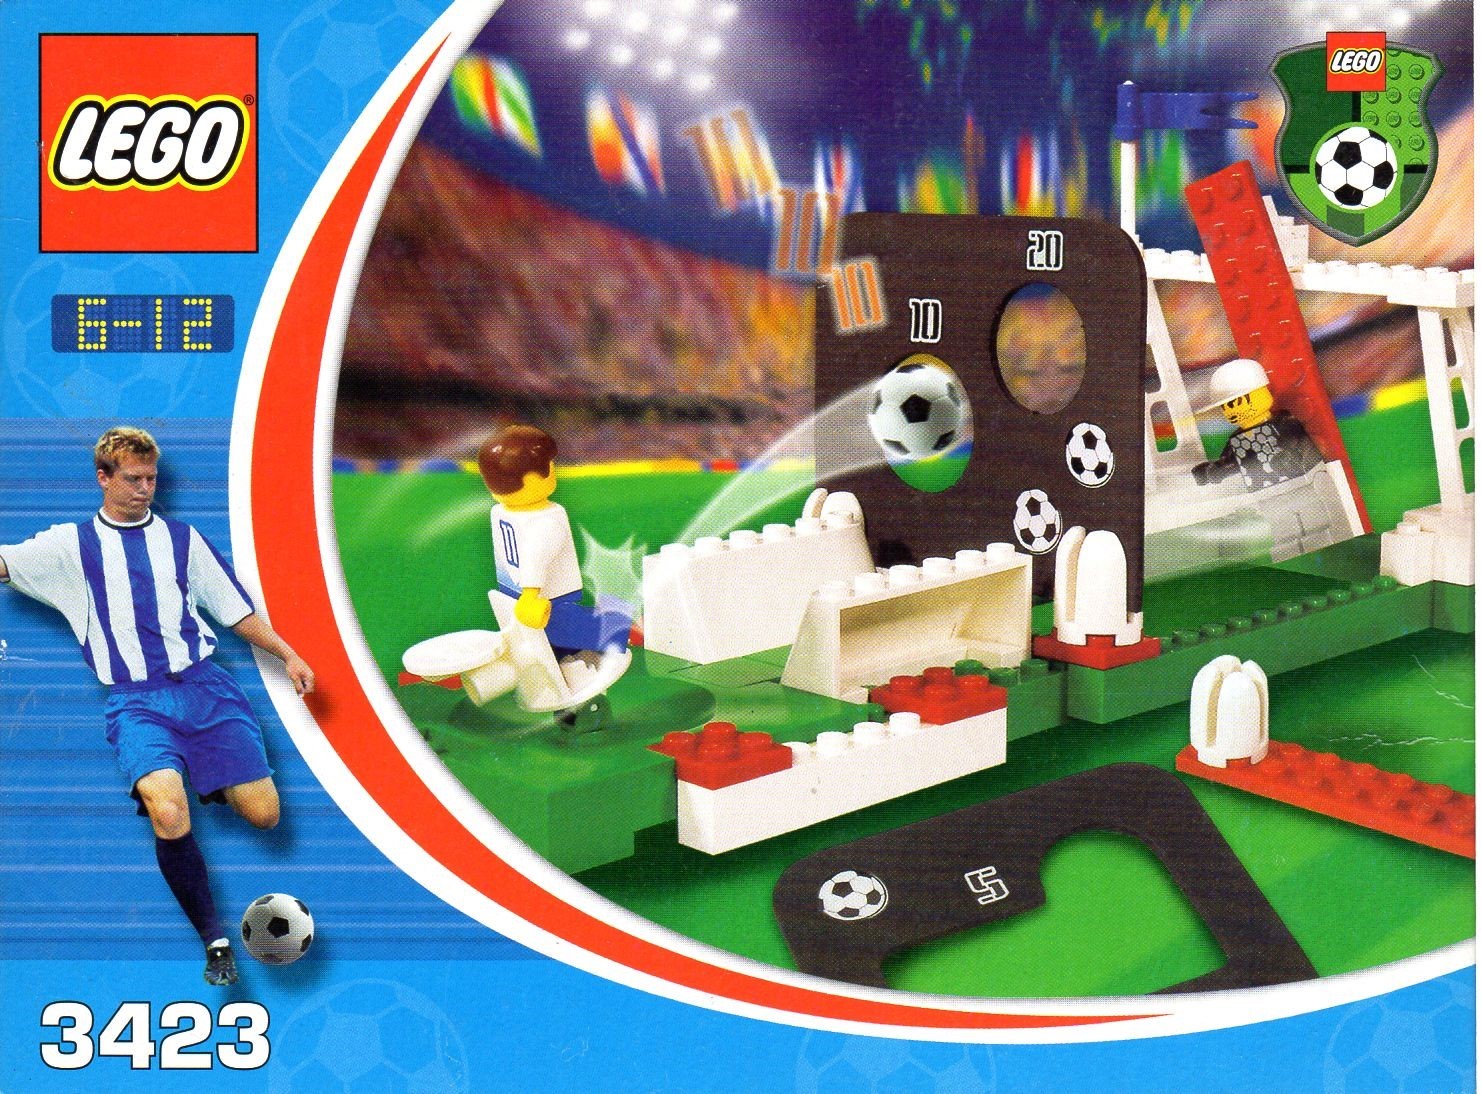 TODO fan del futbol DEBE tener este LEGO / Vale la pena el futbolito? /  Minifigs And Bricks 